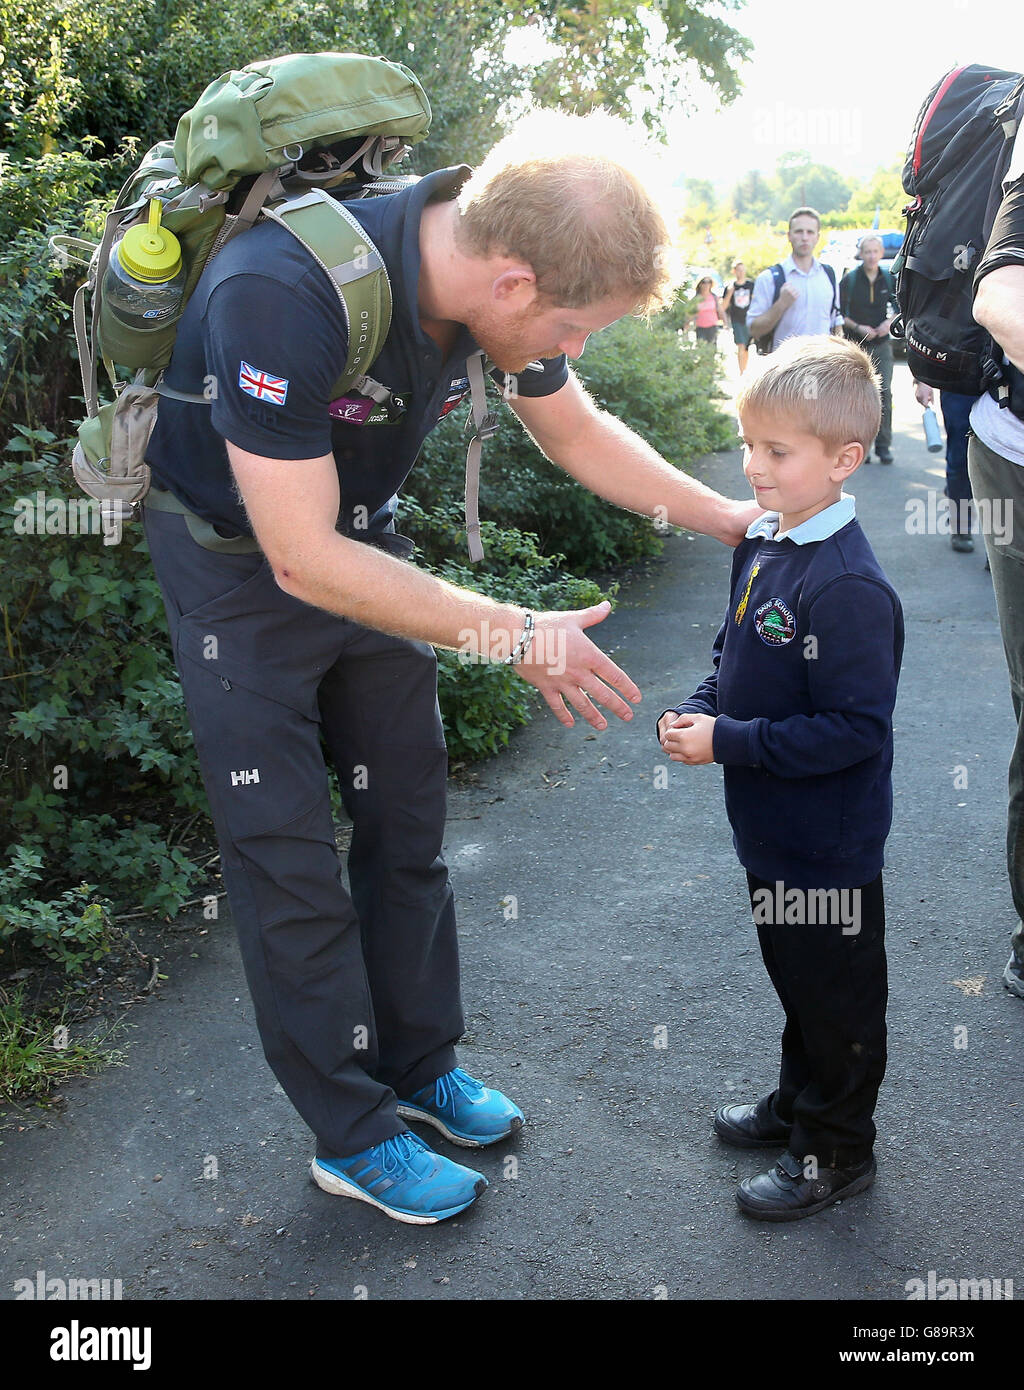 Le prince Harry rencontre un jeune garçon de l'école lorsqu'il a rejoint l'équipe de marche des blessés lors de leur marche vers Ludlow à Shrophire, alors qu'ils parcourent la longueur du pays sur leurs propres routes de rétablissement. Banque D'Images